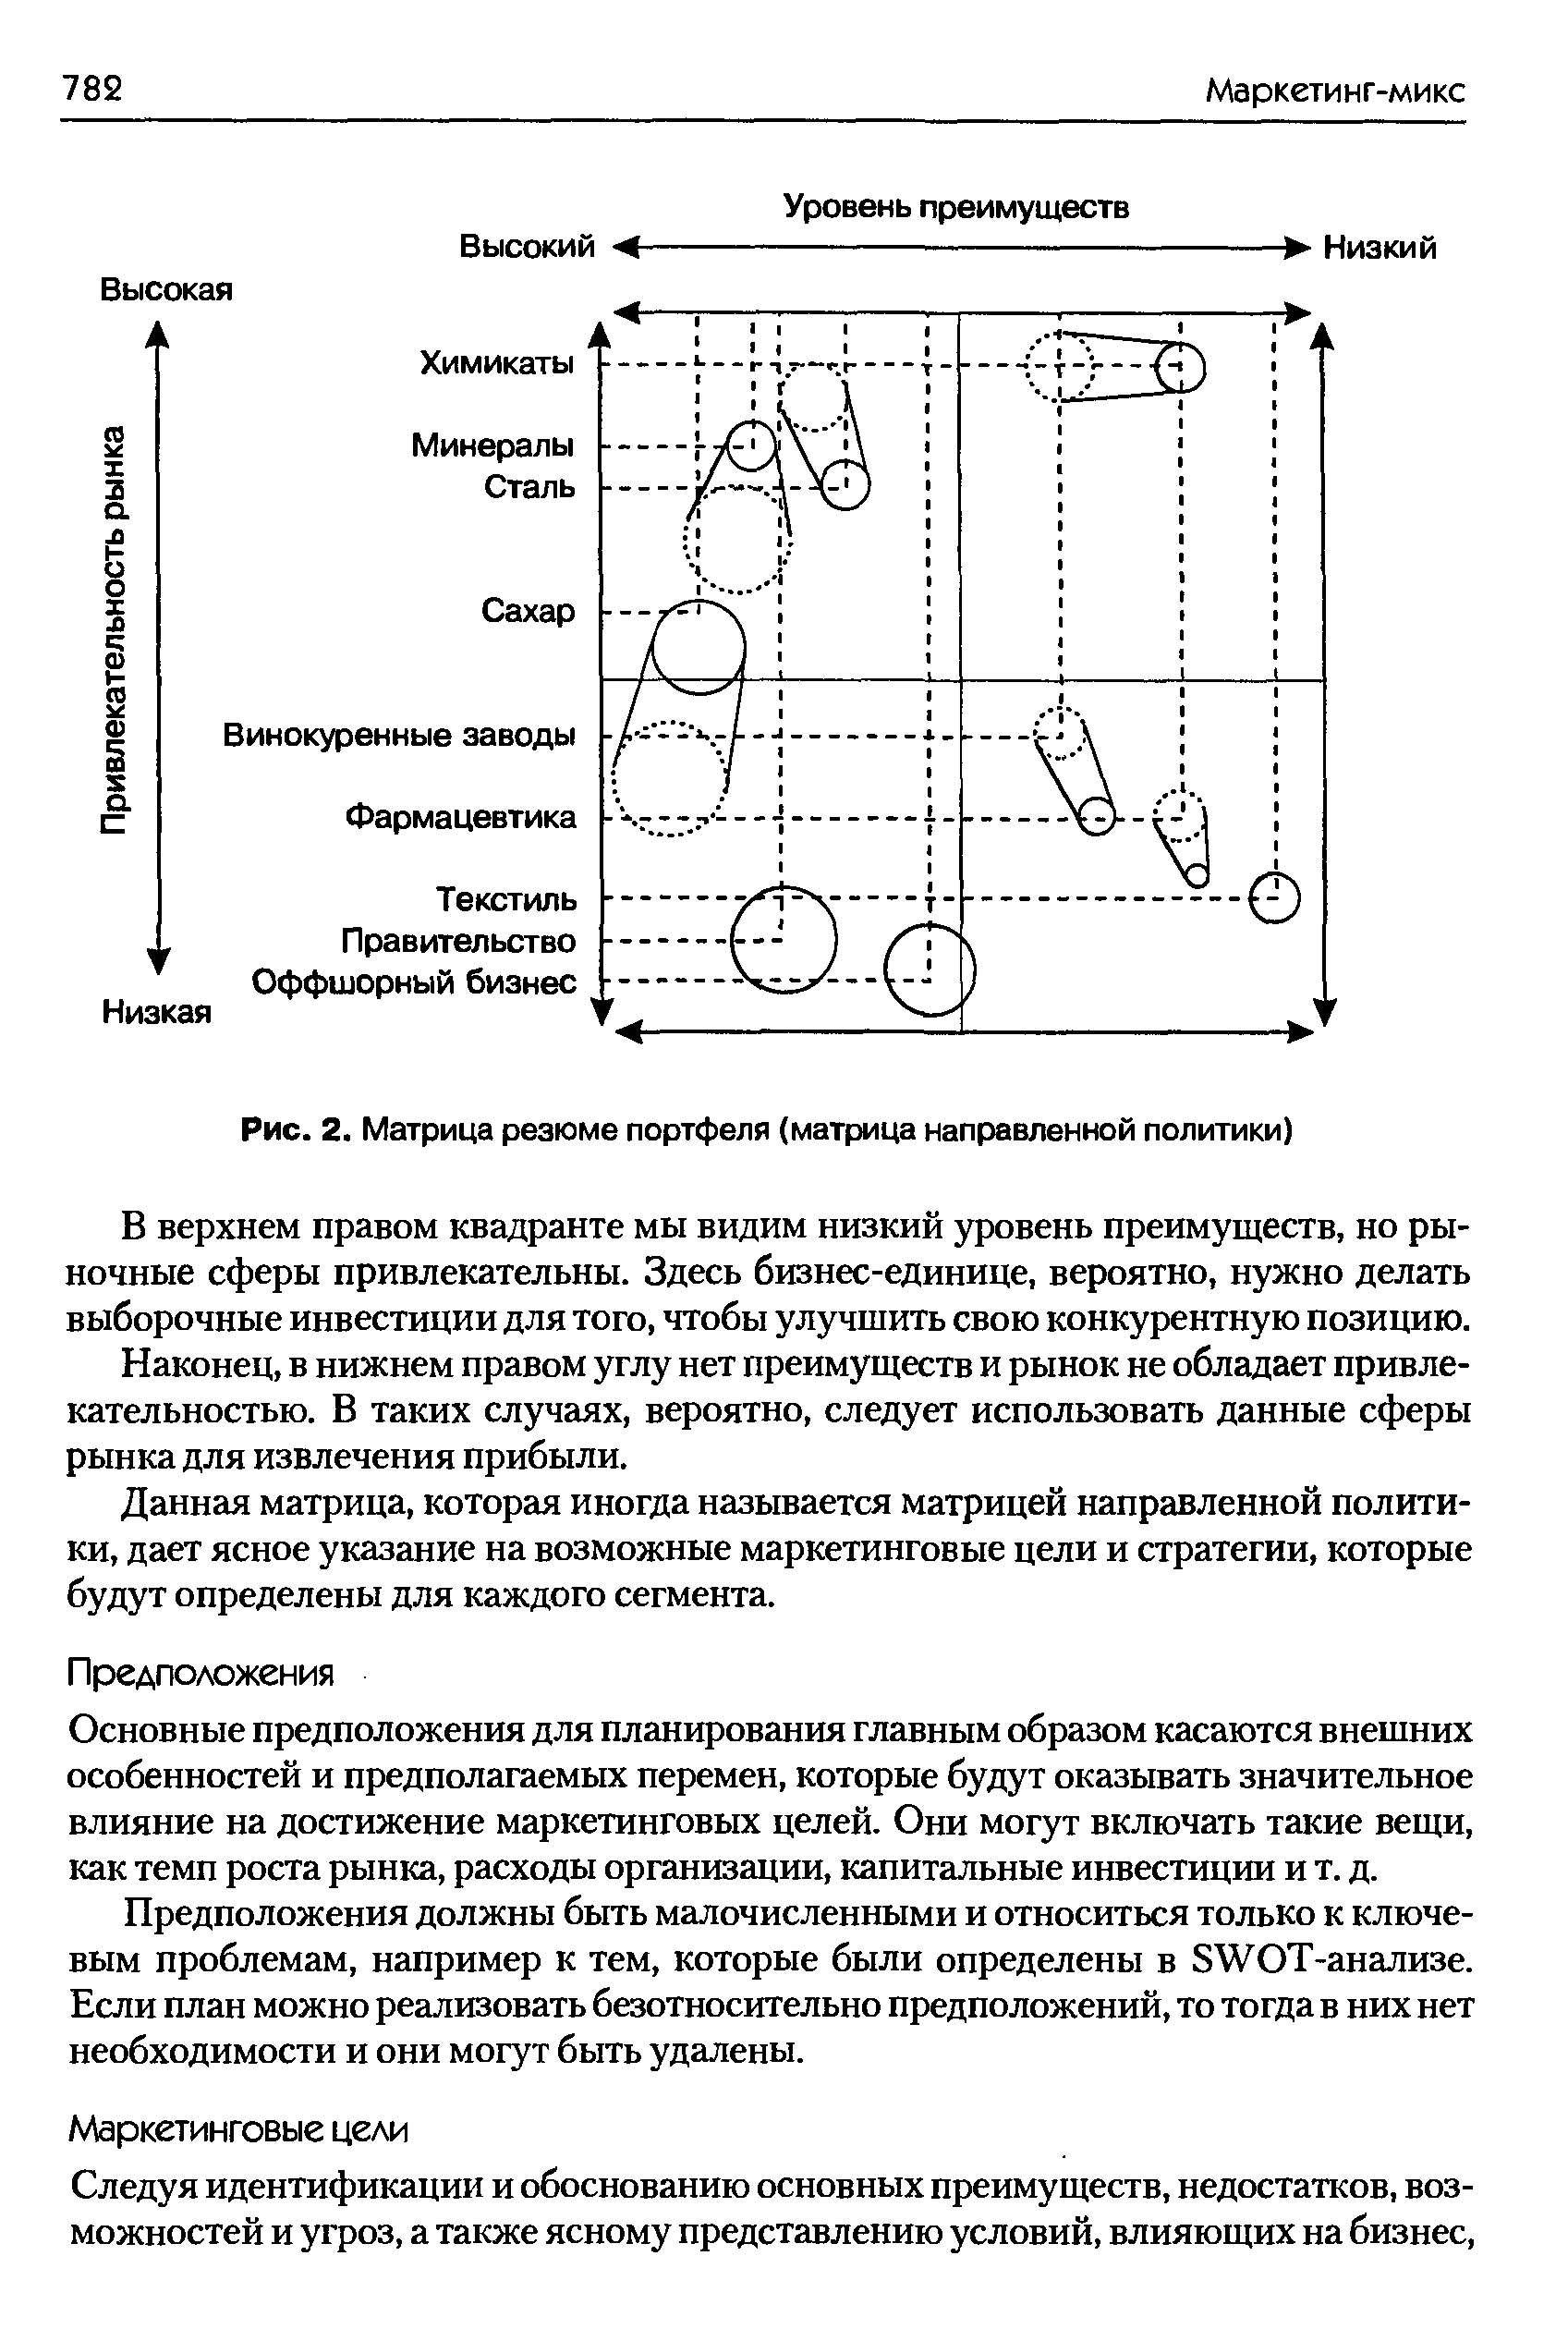 Рис. 2. Матрица резюме портфеля (матрица направленной политики)
